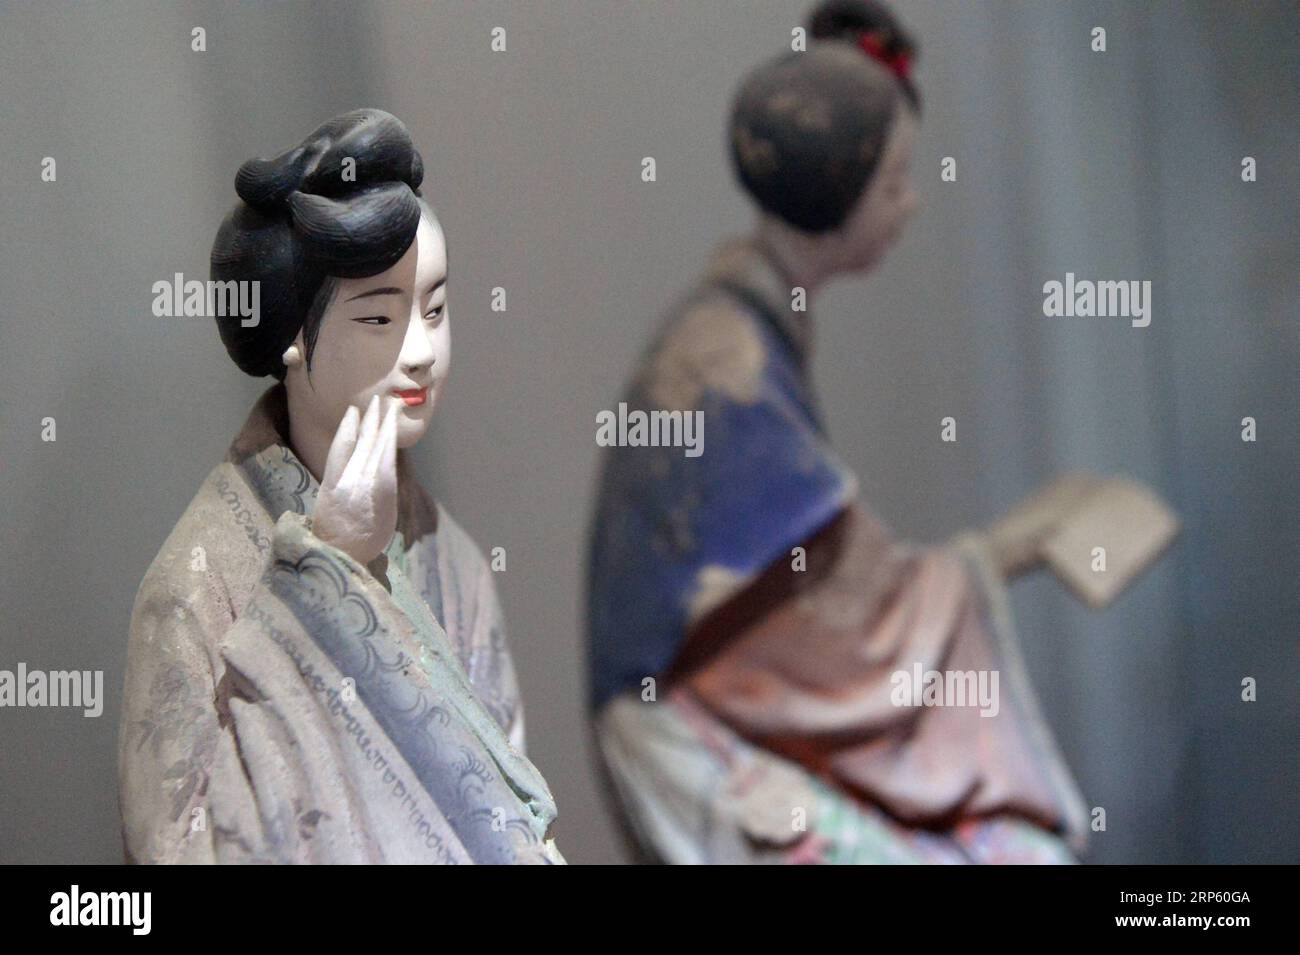 (181229) -- PÉKIN, 29 décembre 2018 (Xinhua) -- une photo prise le 28 décembre 2018 montre les figurines fabriquées par Zhang Yuting, le fabricant de deuxième génération de figurines en argile Zhang , dans la galerie d'art en argile Zhang à Tianjin, dans le nord de la Chine. Figure d'argile Zhang est un nom familier de l'art populaire traditionnel en Chine, et une telle œuvre a une histoire de près de 200 ans. Zhang Yu, le fabricant de figurines en argile de sixième génération de sa famille, a pris en charge l’entreprise familiale en 1996, alors qu’il n’avait que 18 ans. Au fil du temps, le métier et la marque ont évolué. Au lieu de fabriquer des figurines et de les vendre comme une rue Banque D'Images